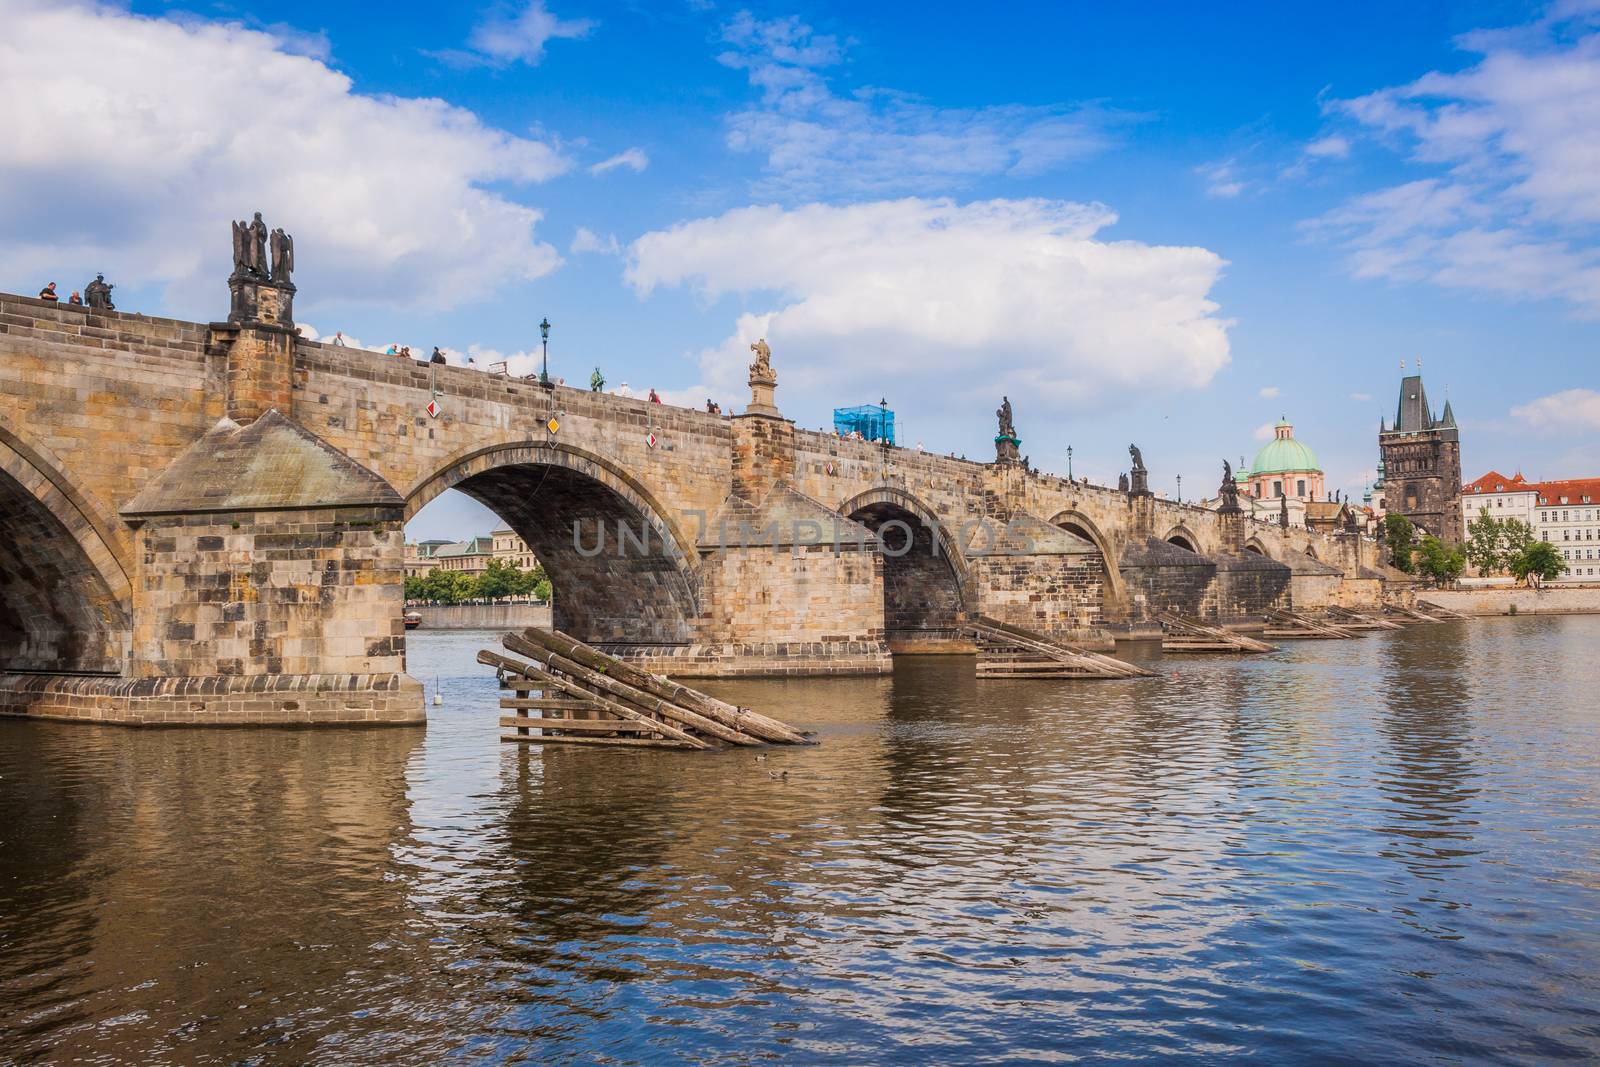 Charles bridge in Prague by bloodua